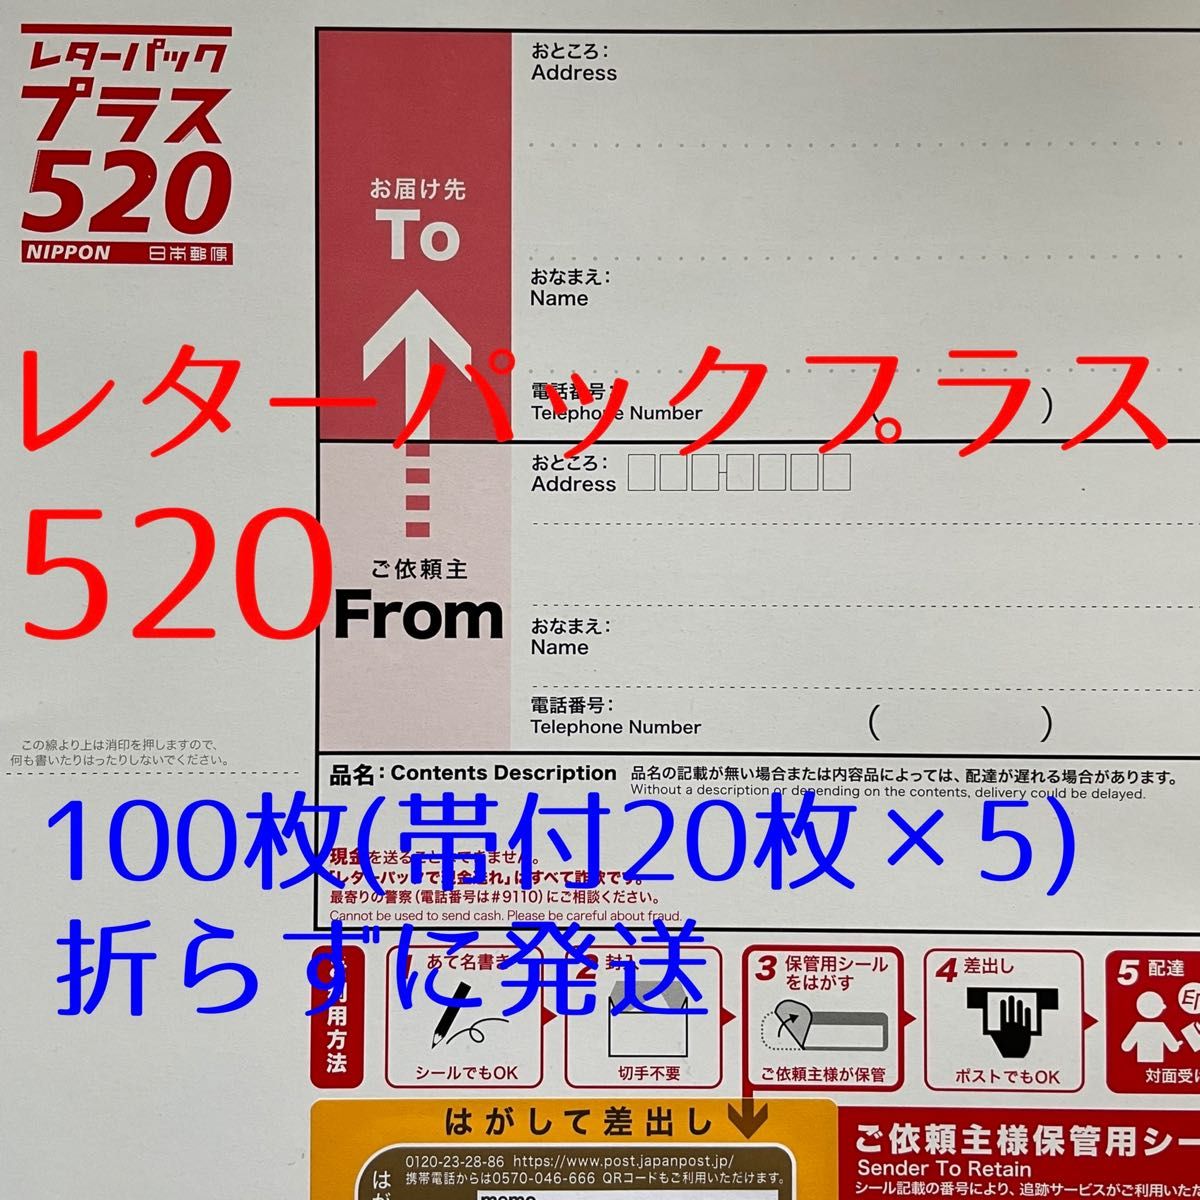 セール商品 日本郵便 レターパックプラス